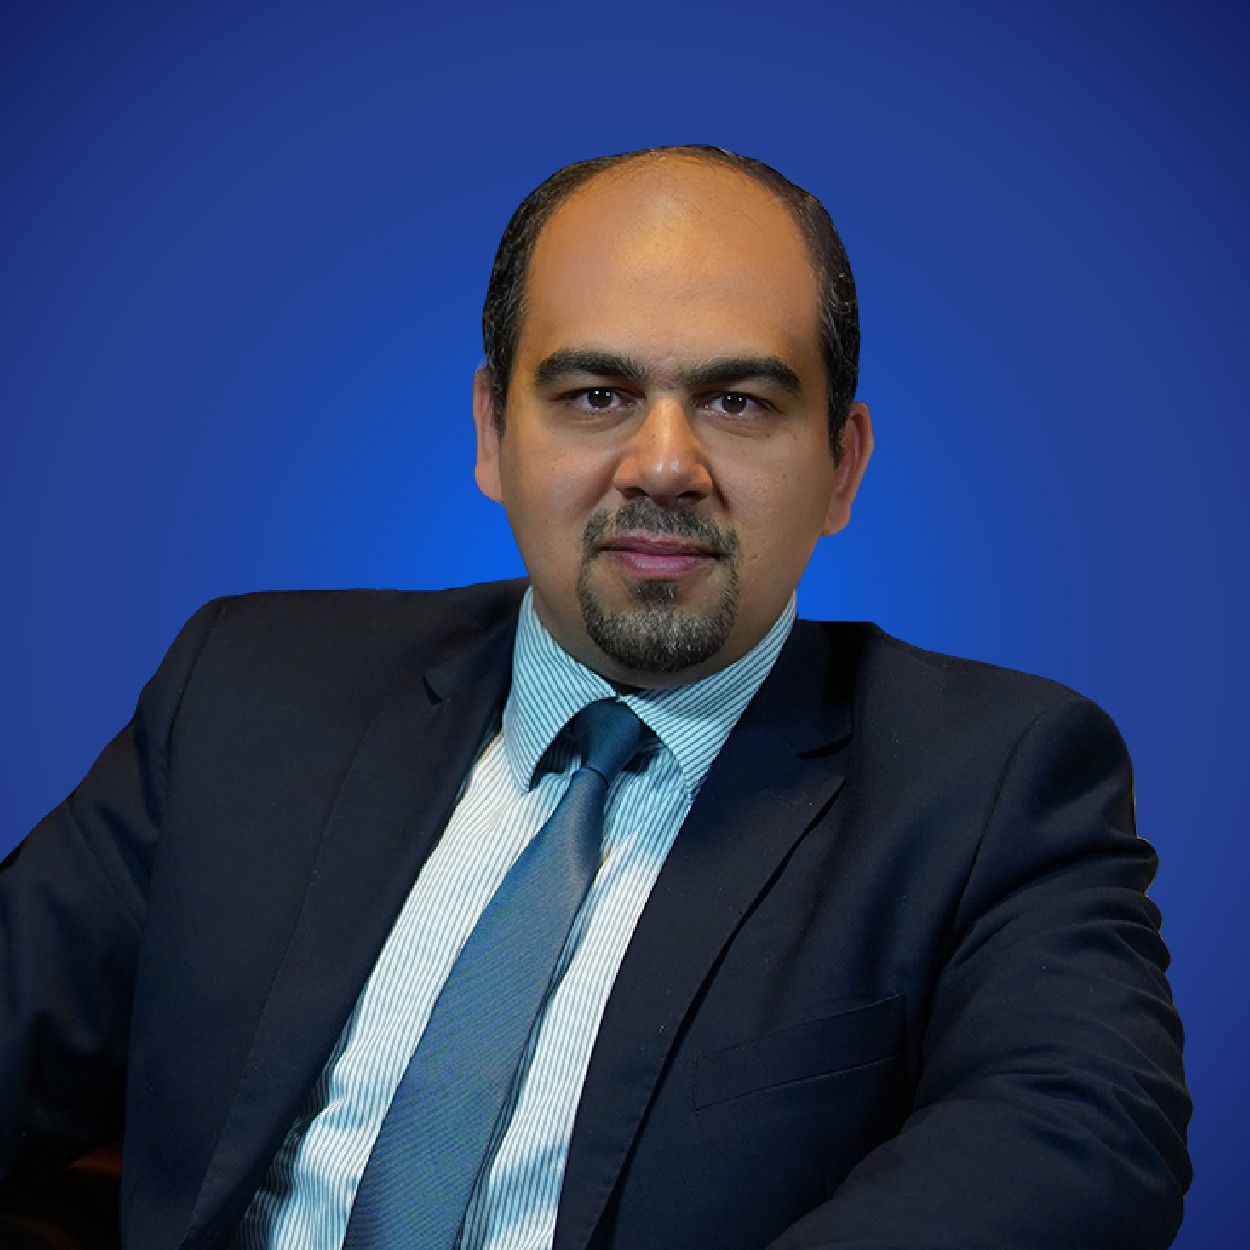 Dr. Amr Sukkar